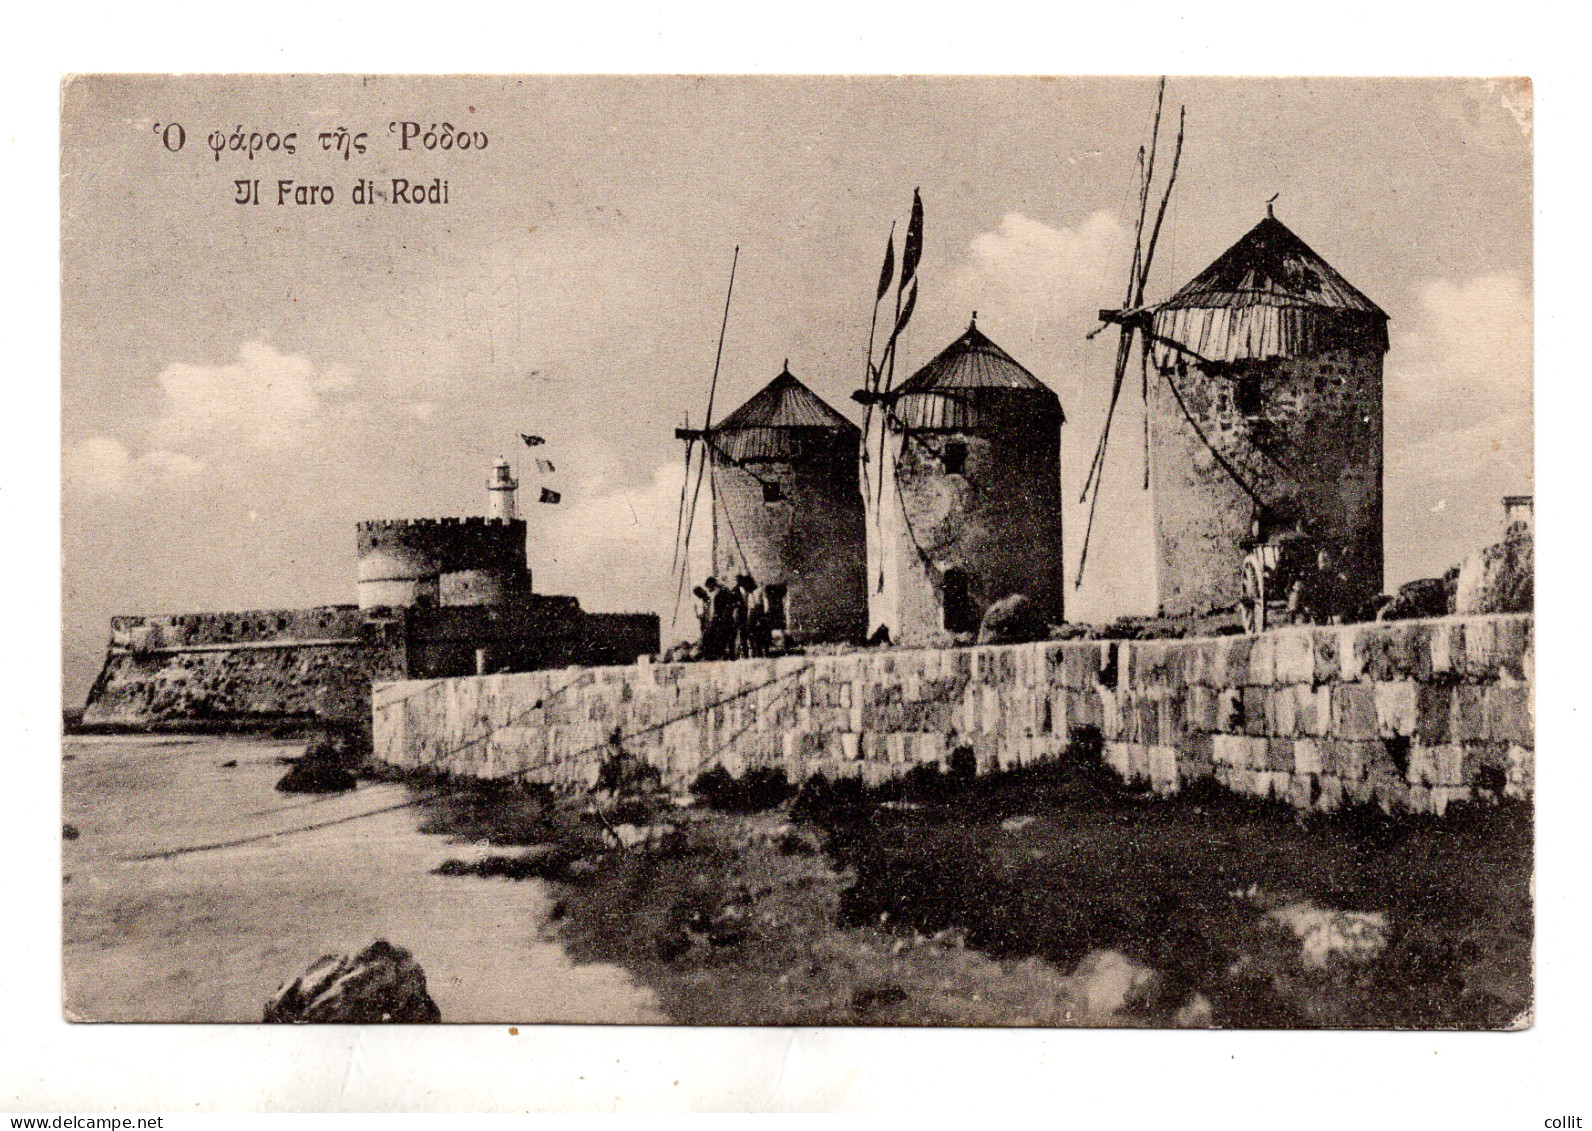 Il Faro Di Rodi - Cartolina Viaggiata Da Cos - Aegean